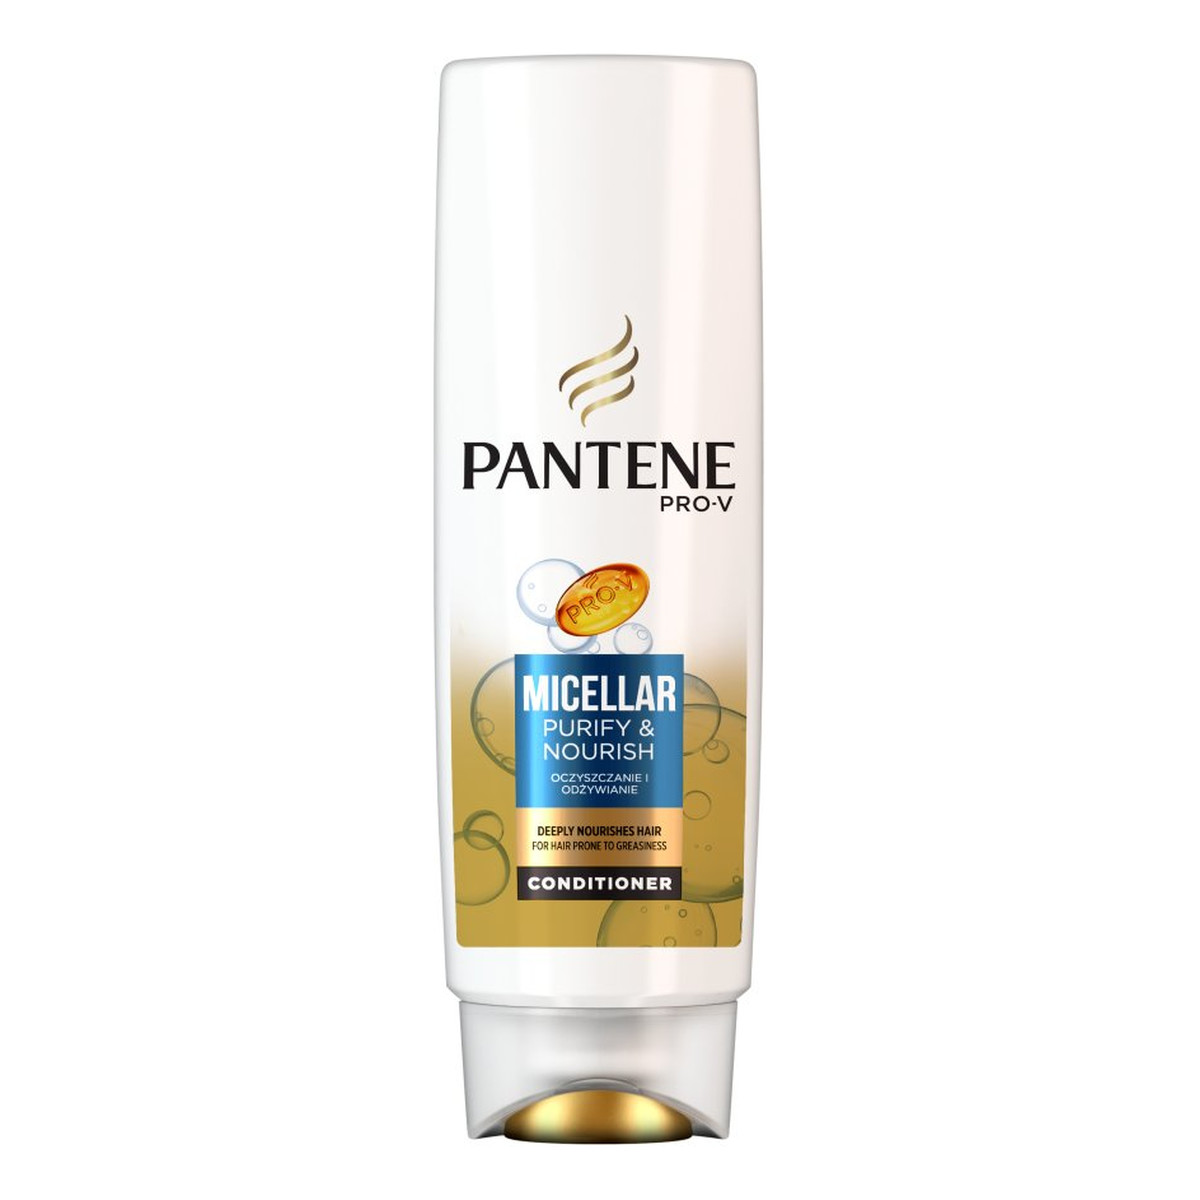 Pantene Pro-V Oczyszczanie i Odżywianie Odżywka do włosów 300ml